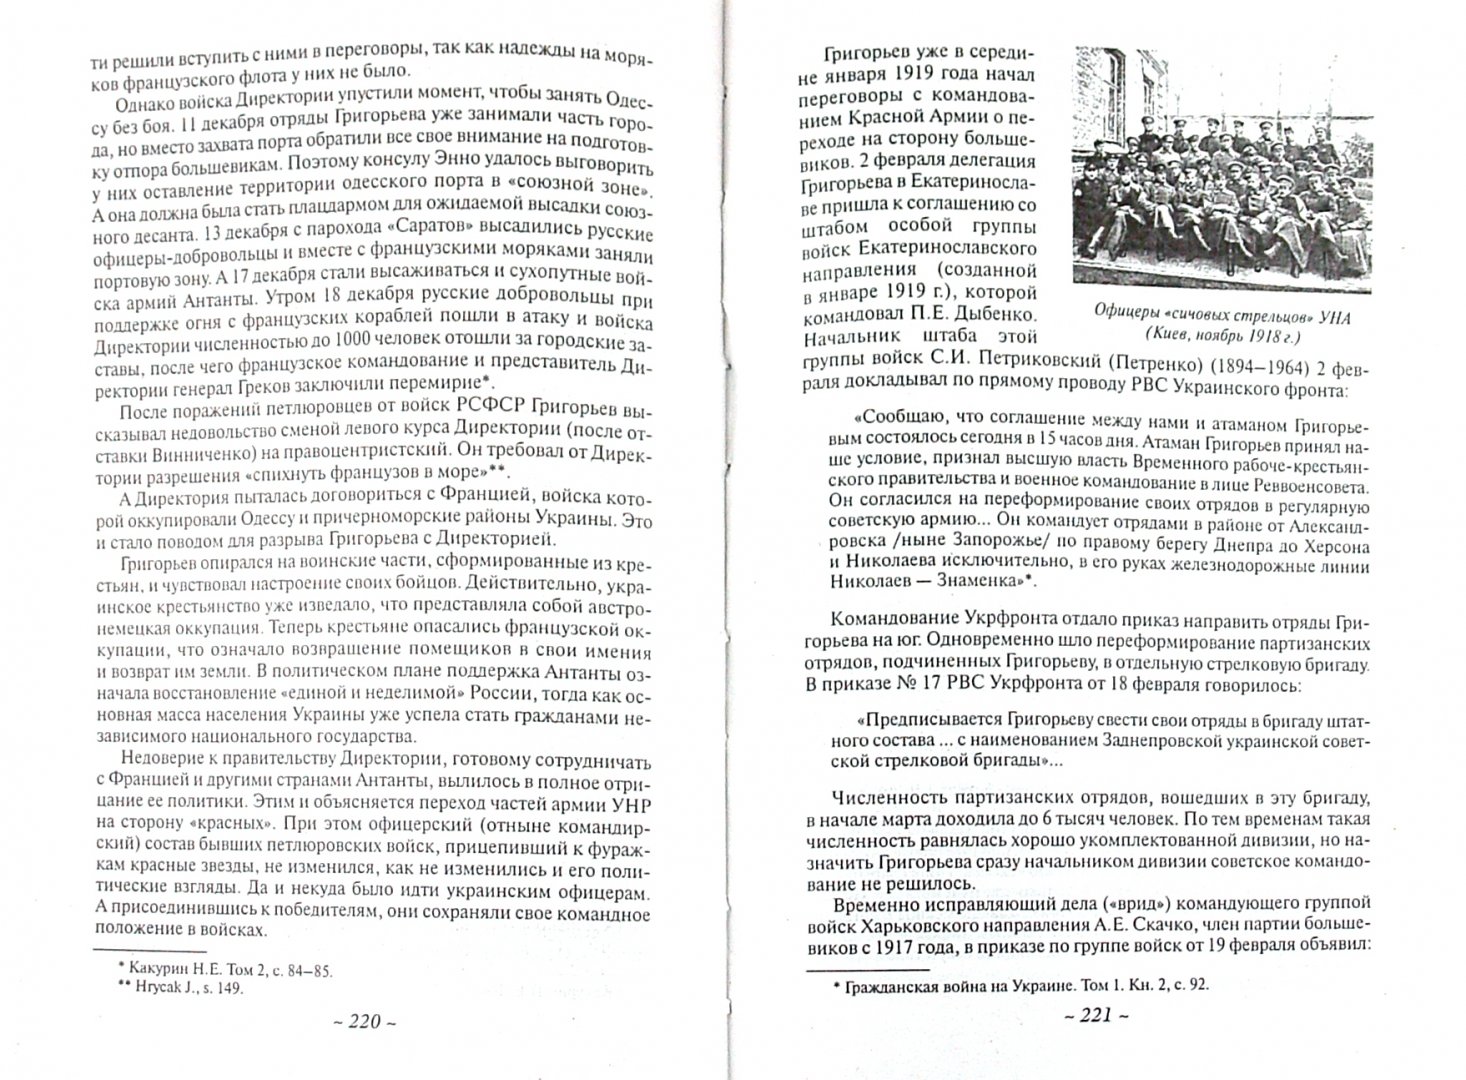 Иллюстрация 1 из 12 для Борьба за Украину, 1917-1921 - Анатолий Грицкевич | Лабиринт - книги. Источник: Лабиринт